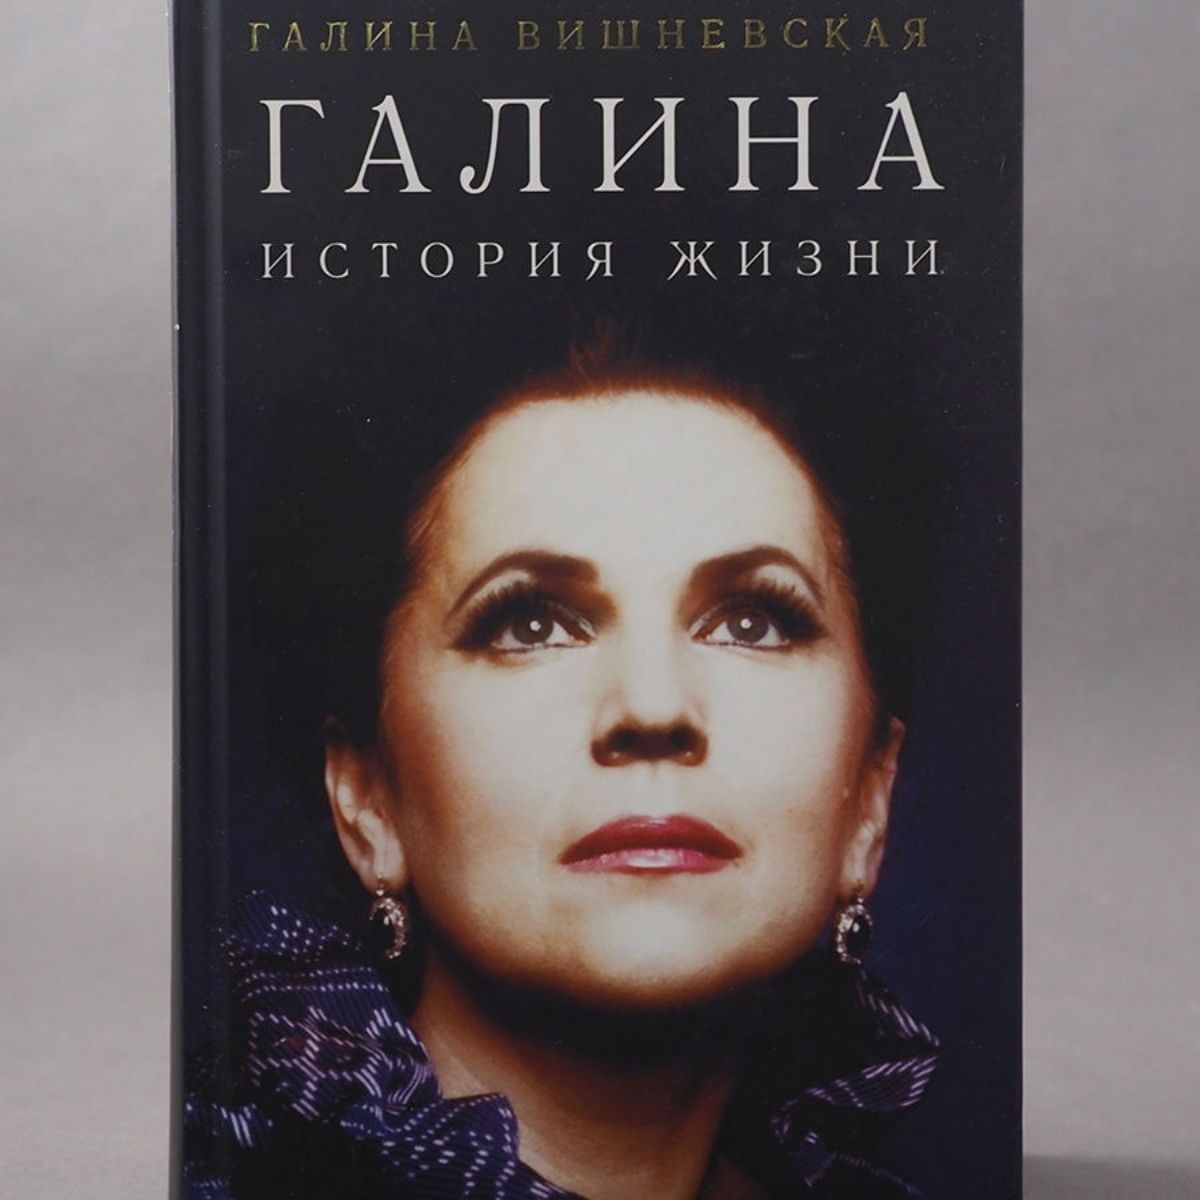 El libro de Galina Pavlovna Vishnevskaya Galina: La historia de una vida